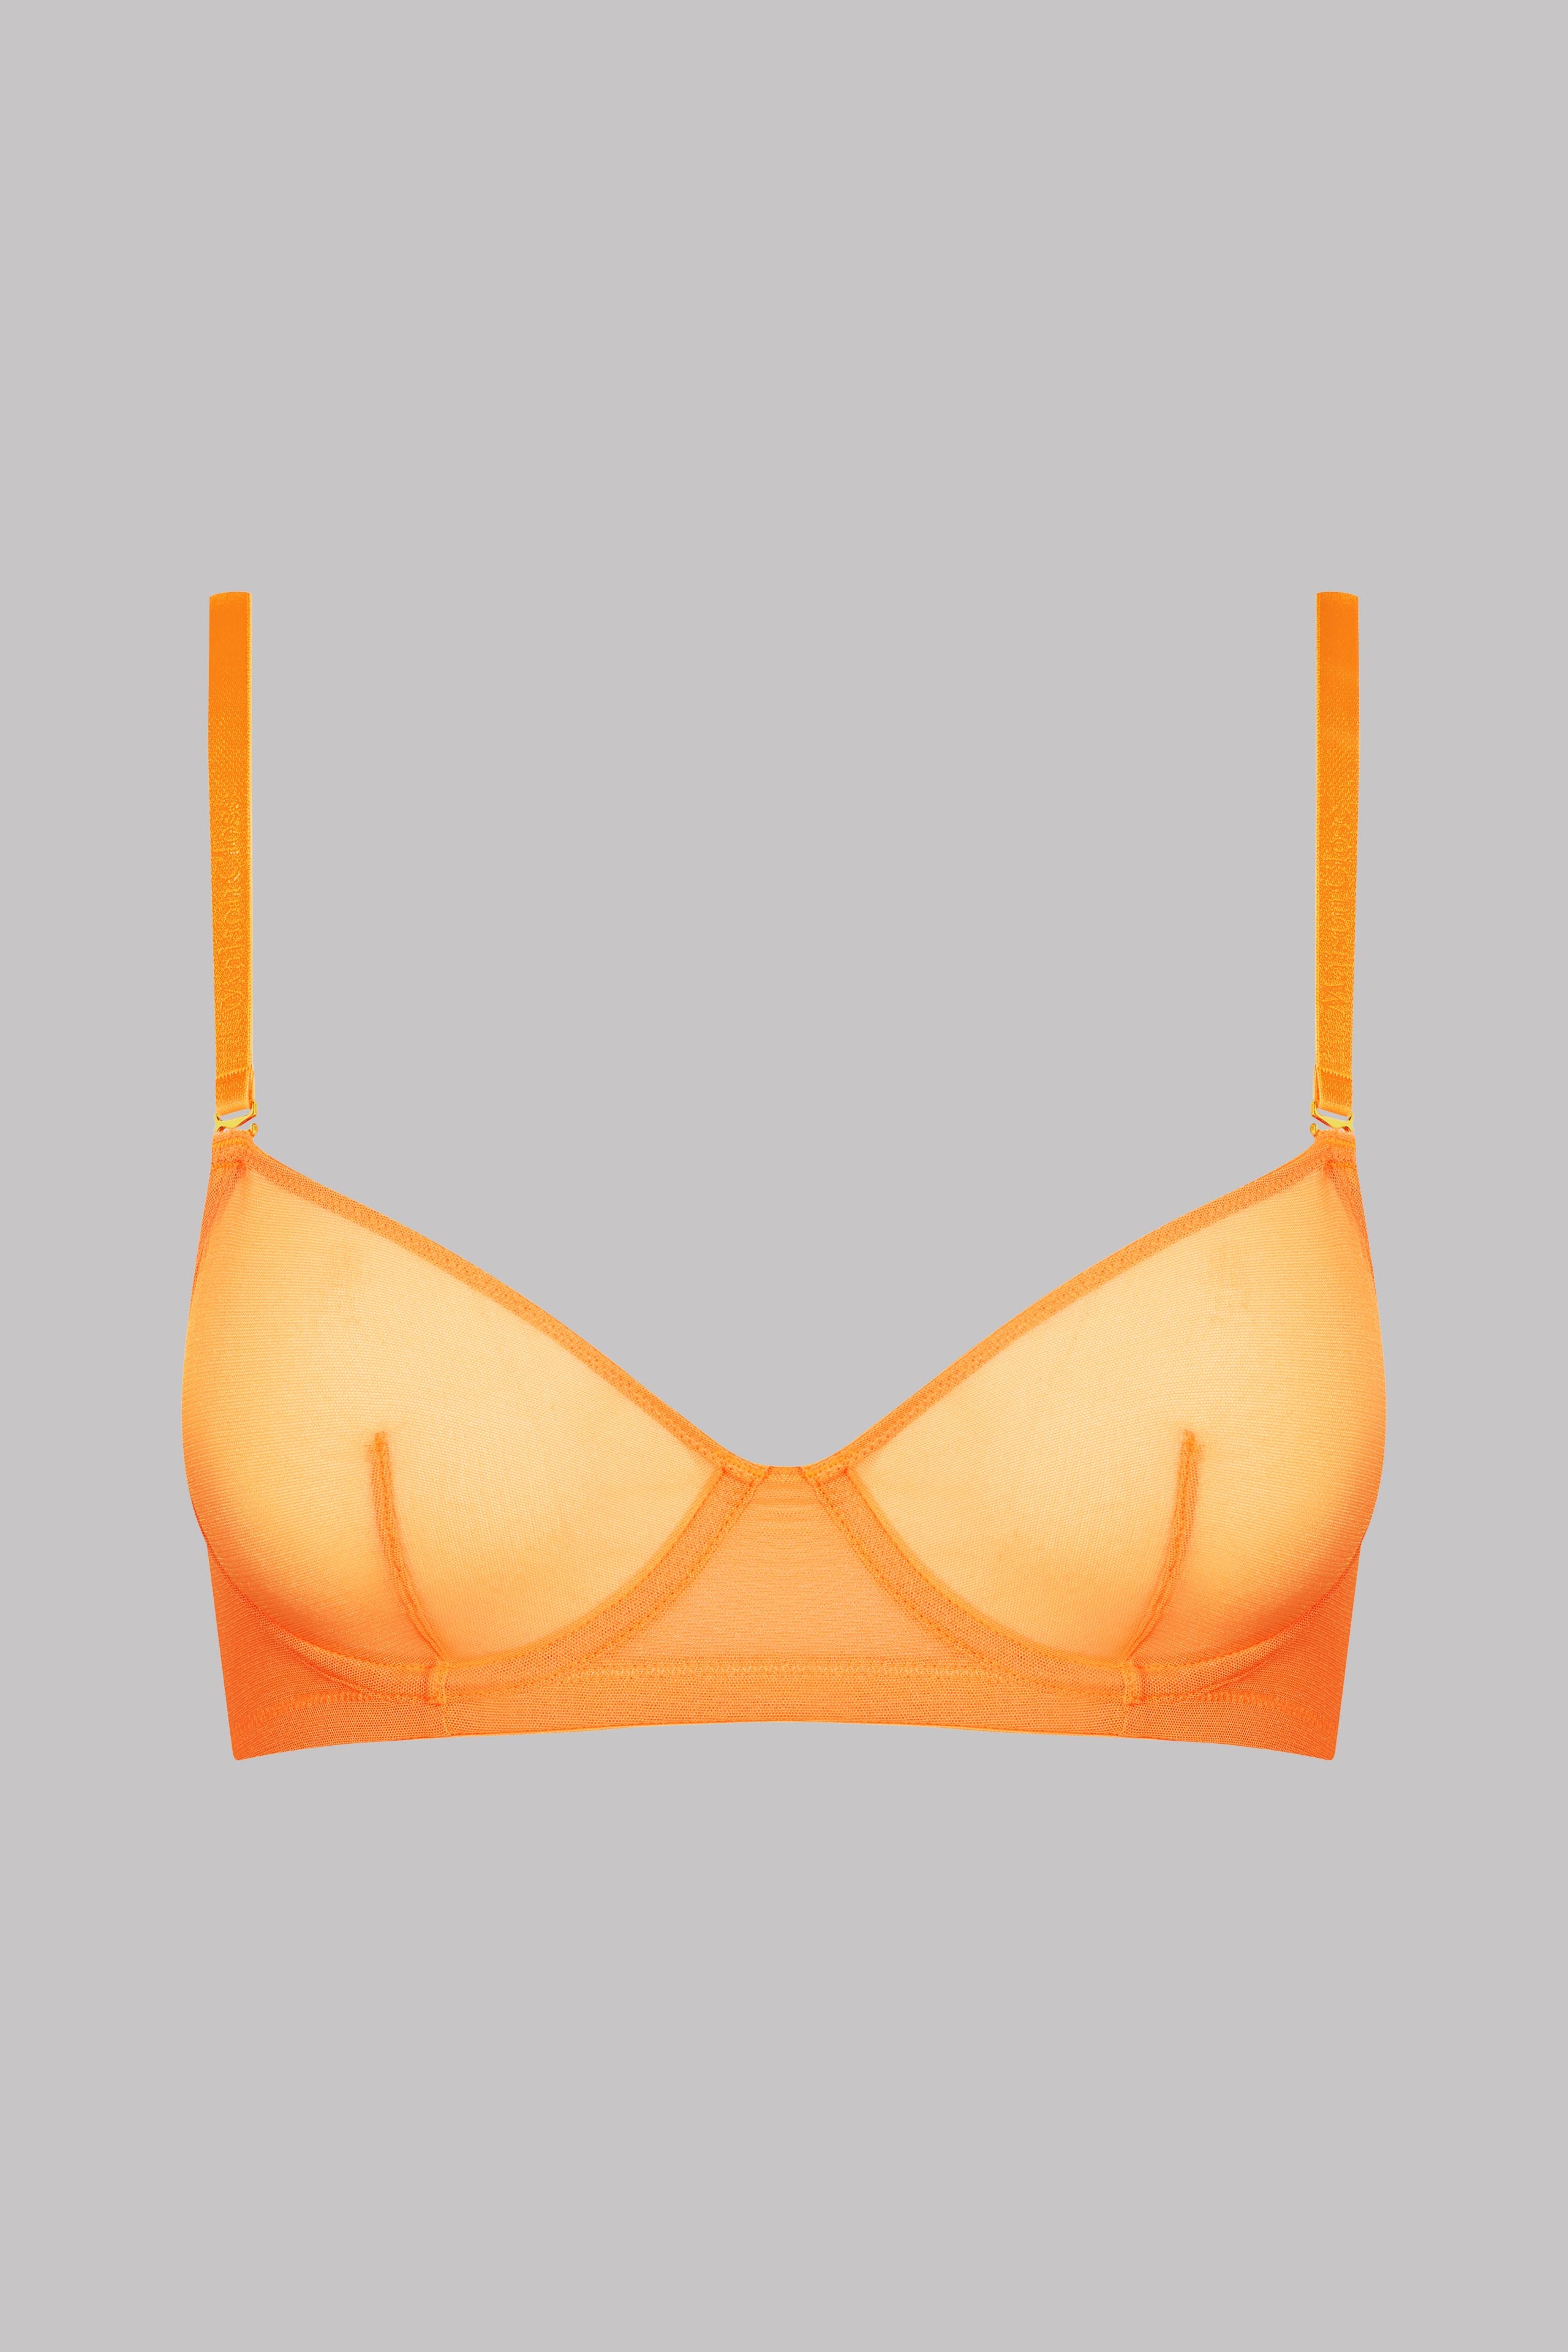 Safety Orange Bralette - Neon Collection – AndHerShop